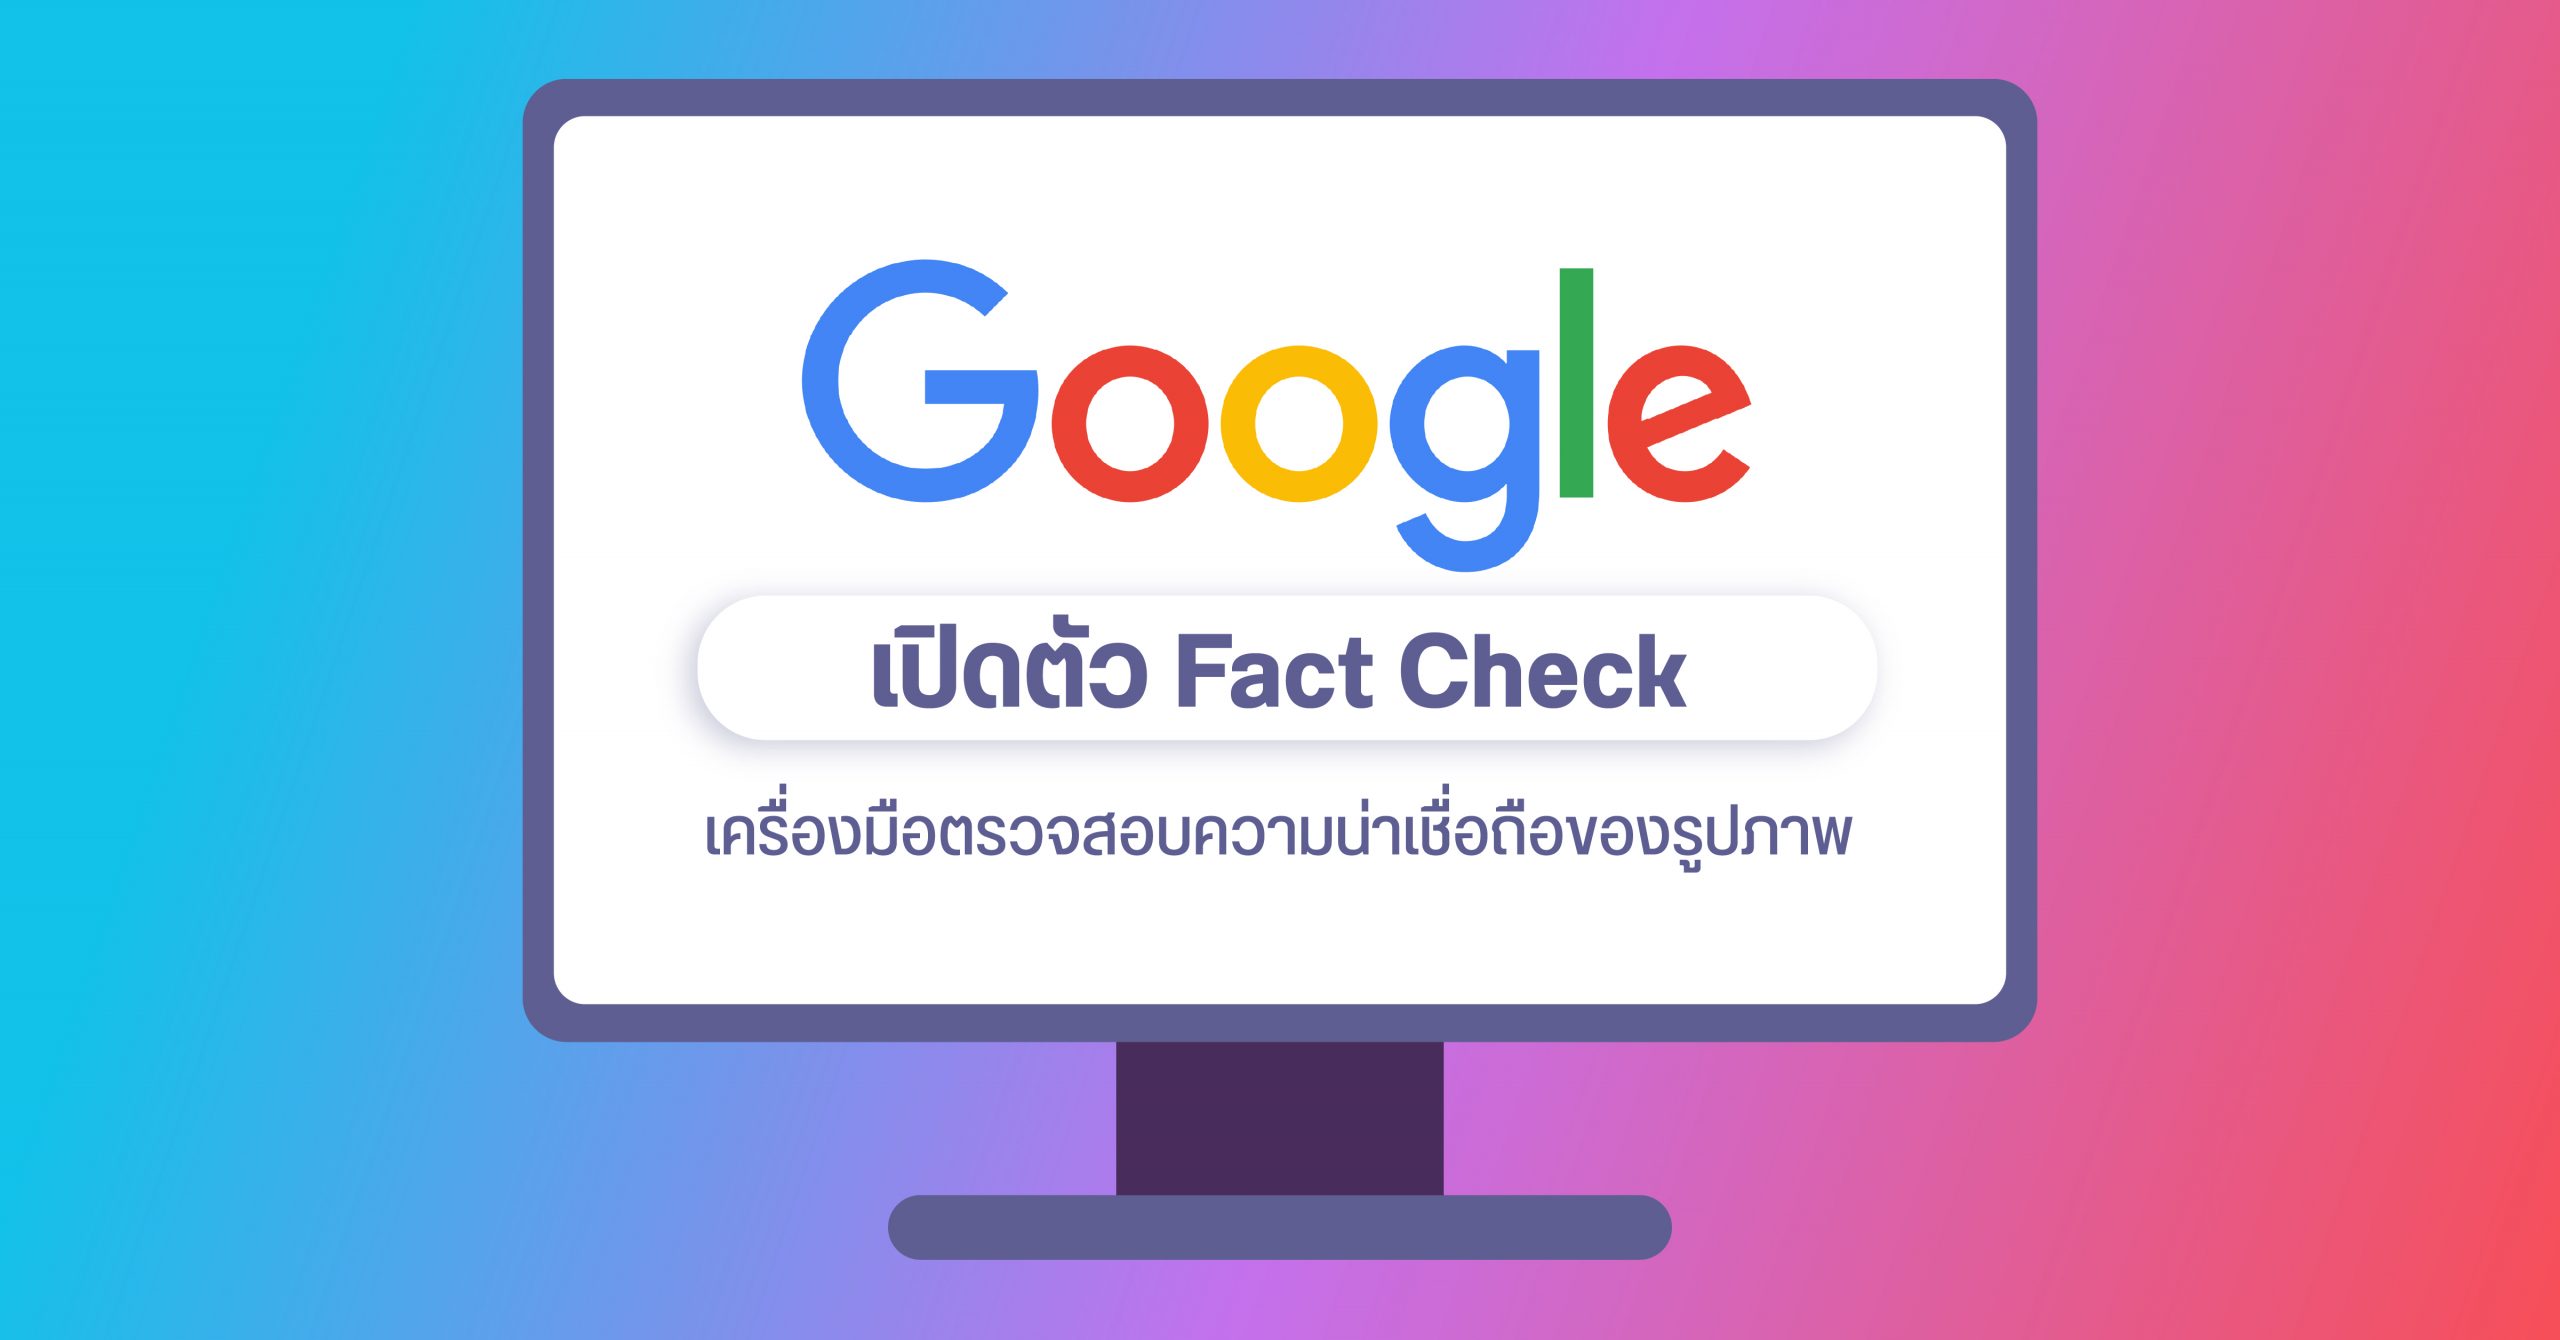 Google เปิดตัวฟีเจอร์ Fact check เพื่อตรวจสอบรูปใน Google search ว่าเป็นของจริง หรือถูกตัดต่อมาอีกที